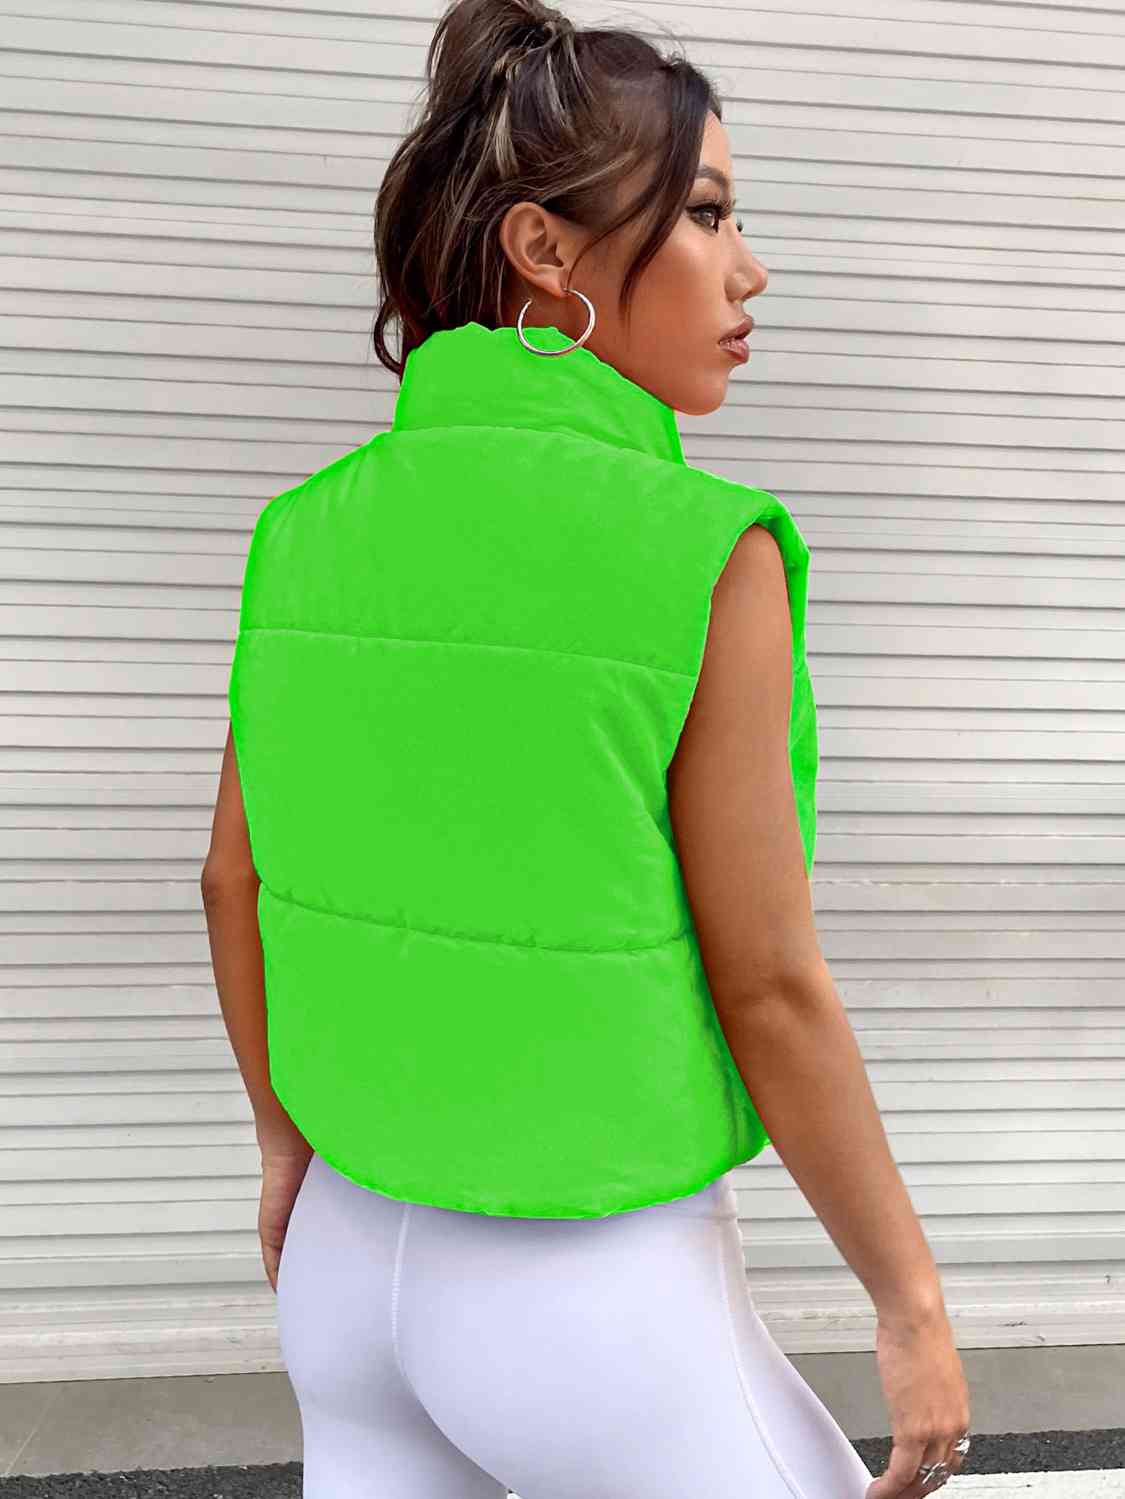 Zip-Up Puffer Vest – Flyclothing LLC